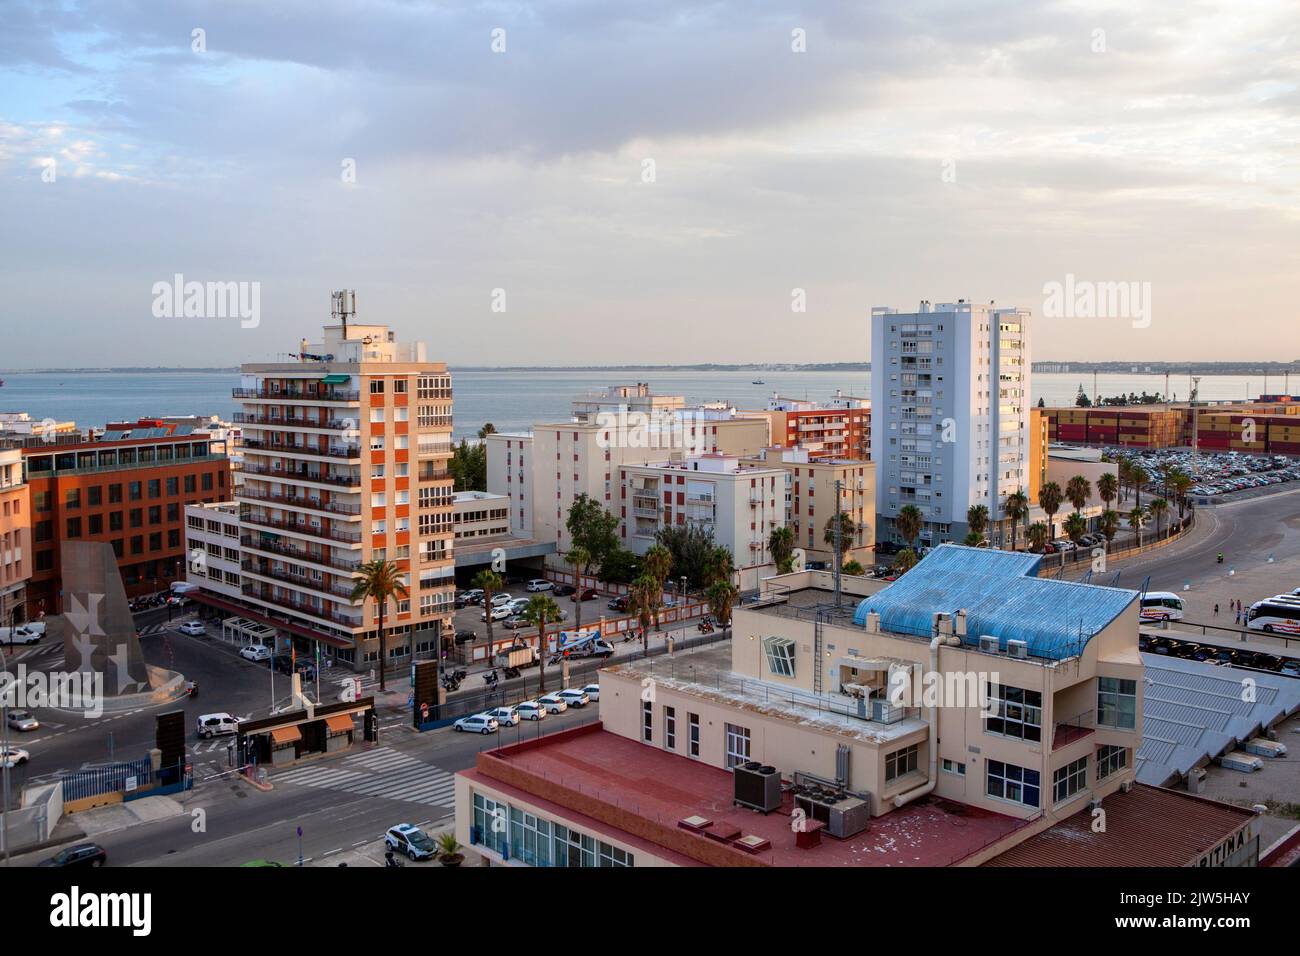 Cádiz a city and port in southwestern Spain Stock Photo